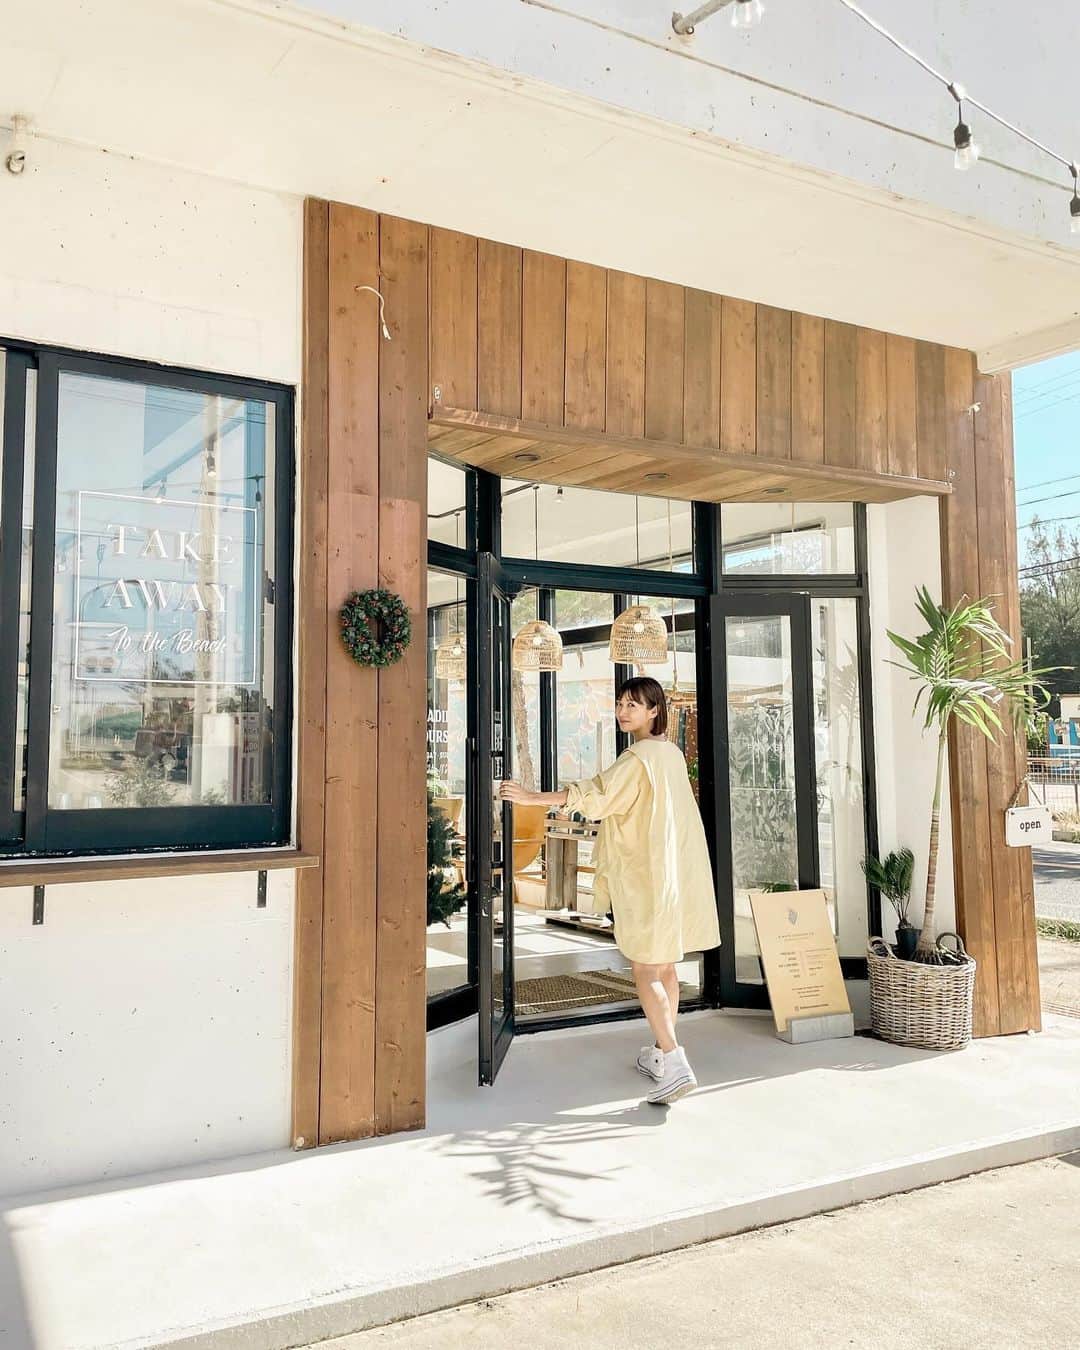 藤崎奈々子のインスタグラム：「. 可愛いお店があるよ！と友達に教えてもらってやって来た @alwayssunshineco.okinawa  ドライブ中あのお店可愛いー♡と話していたらここでした 外から見ても可愛いんだな ・ お店の中は、素敵な写真とお洋服で溢れていて好みすぎ！ 特にATSUSHI SUGIMOTOさんの写真が素敵で、ずーっと見てしまった…  お洋服も可愛くて、夏に来てたら爆買いしていた予感 (夏っぽいお洋服だったので、欲しかったけど今回は眺めていた) ・ カフェもあって、チャイを頼んだらアッサリ風味でめっちゃ美味しかった！ 恩納村方面へ行ったらぜひ遊びに行ってみてね 店員さんもオシャレで素敵だったよ ＿＿＿＿＿＿＿＿＿＿＿＿＿＿＿ ALWAYS SUNSHINE  住所　沖縄県国頭郡恩納村瀬良垣７０６−１７ ハイアットリージェンシー瀬良垣近く ＿＿＿＿＿＿＿＿＿＿＿＿＿＿＿ ・ #小旅行 #旅行好き #旅行好き女子 #大人旅 #カメラ旅 #女子旅 #国内旅行 #ナナタビ #ナナコタビ #大人の絶景旅 #沖縄旅行 #沖縄カフェ #沖縄観光 #沖縄旅 #恩納村 #恩納村カフェ #alwayssunshine #japantravel #japantrip #okinawa」